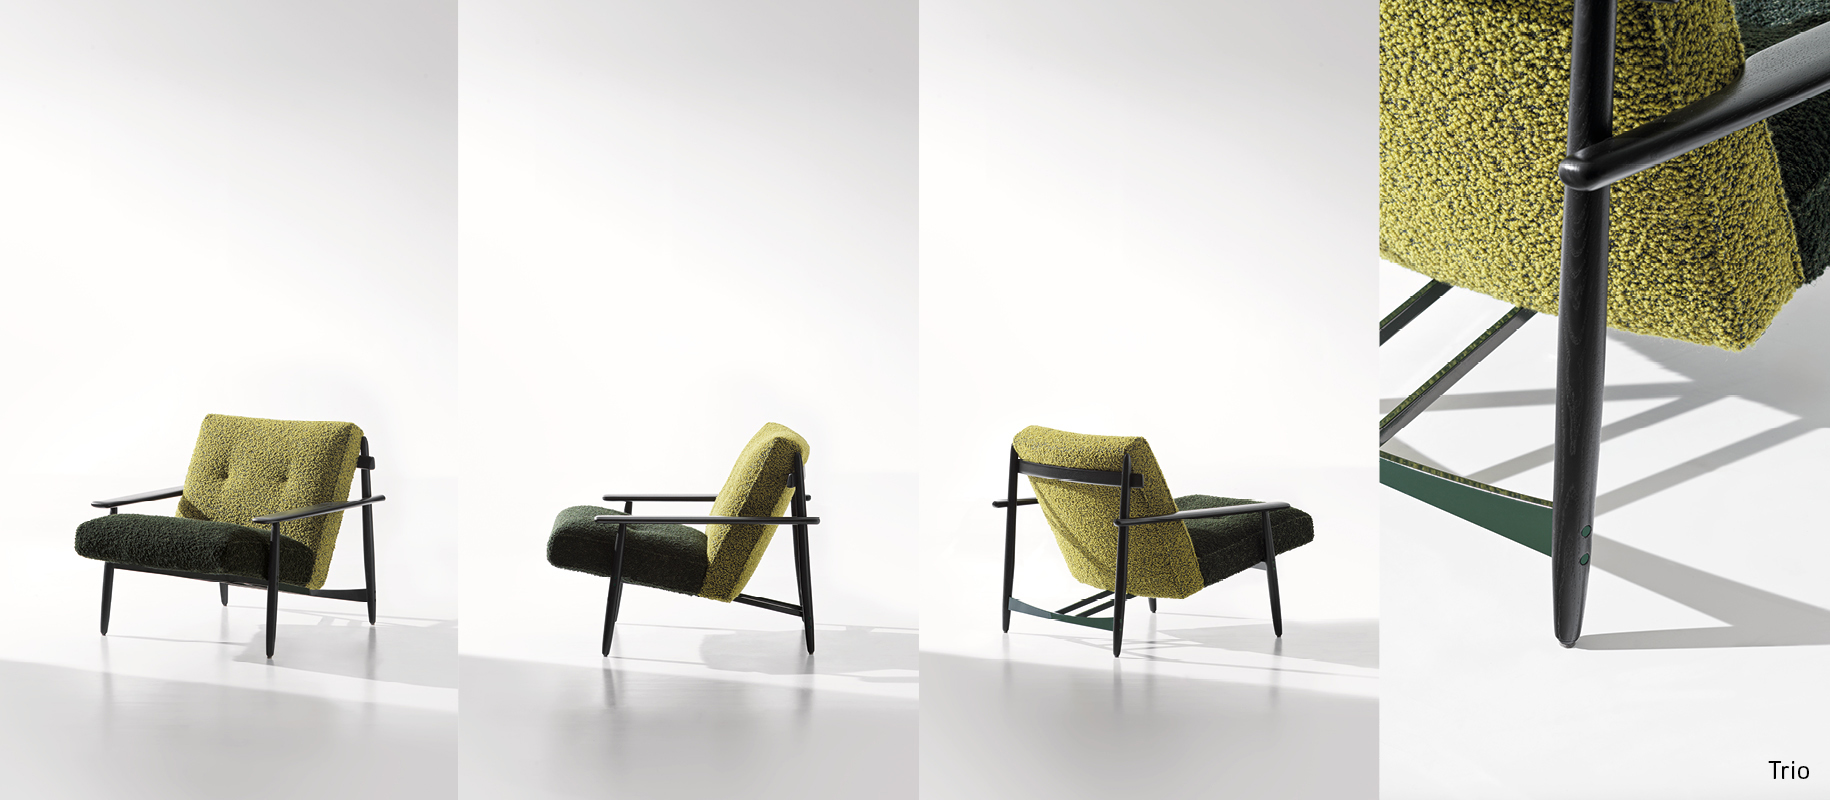 <p>Der gekonnte und kombinierte Einsatz verschiedener Materialien kennzeichnet auch den von Marcio Kogan für die 2024 Collection entworfenen Sessel <strong>Trio</strong>, auf dem auch die Version <strong>Trio Outdoor </strong>für den Außenbereich aufbaut.</p>
